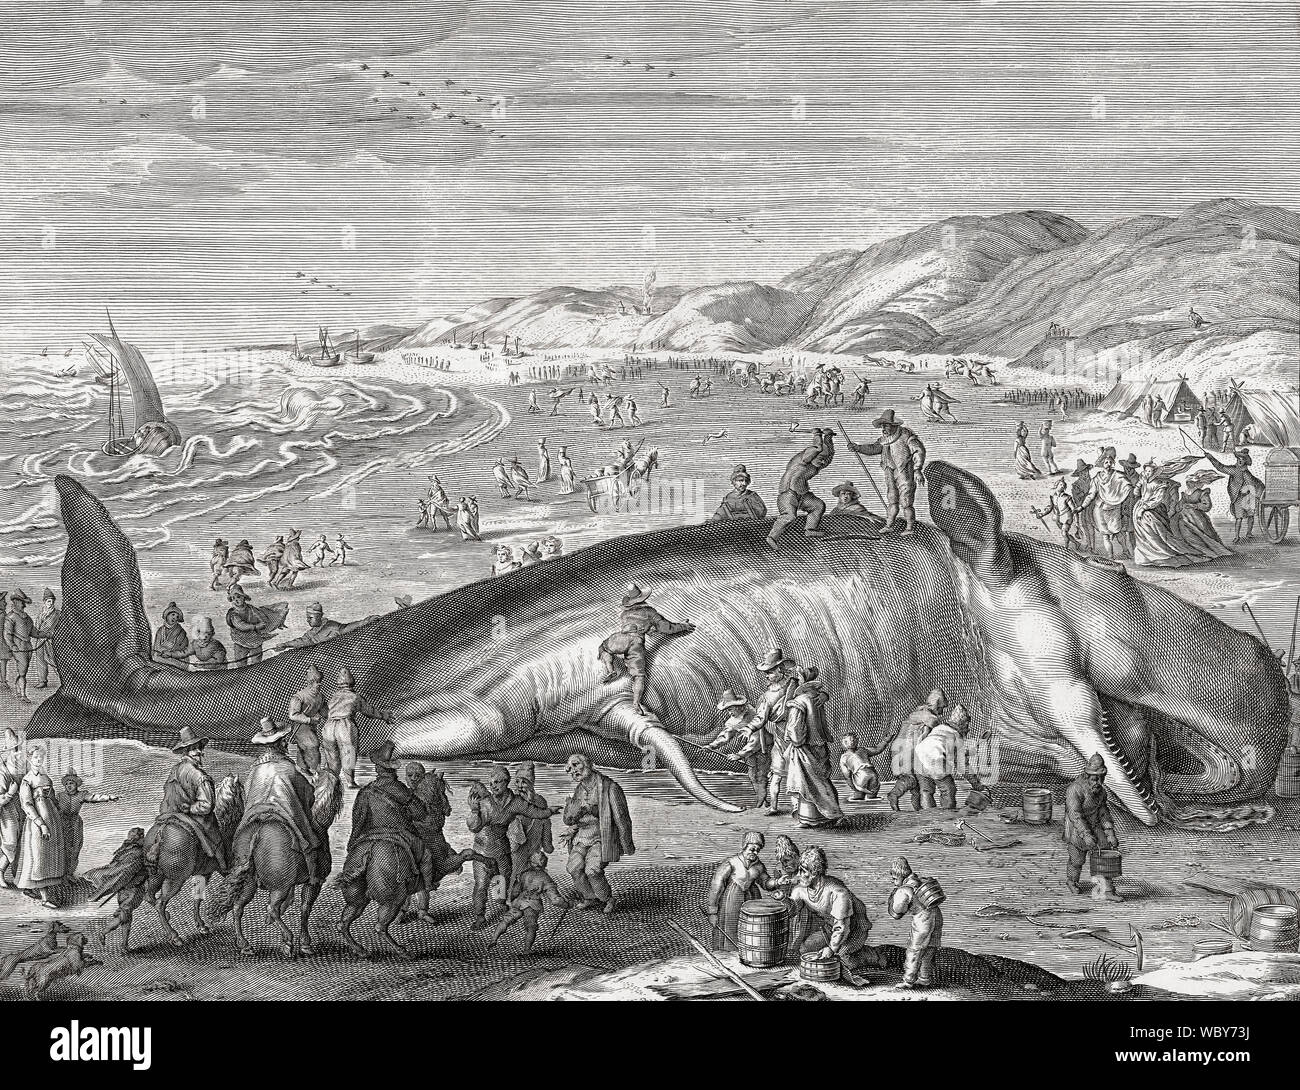 Cachalot échoué sur la plage de Néerlandais en 1598. Il a attiré de nombreux visiteurs, y compris l'artiste Henrik Goltzius. Cette illustration a été faite par Jacob Mathan après le travail de Goltzius Banque D'Images